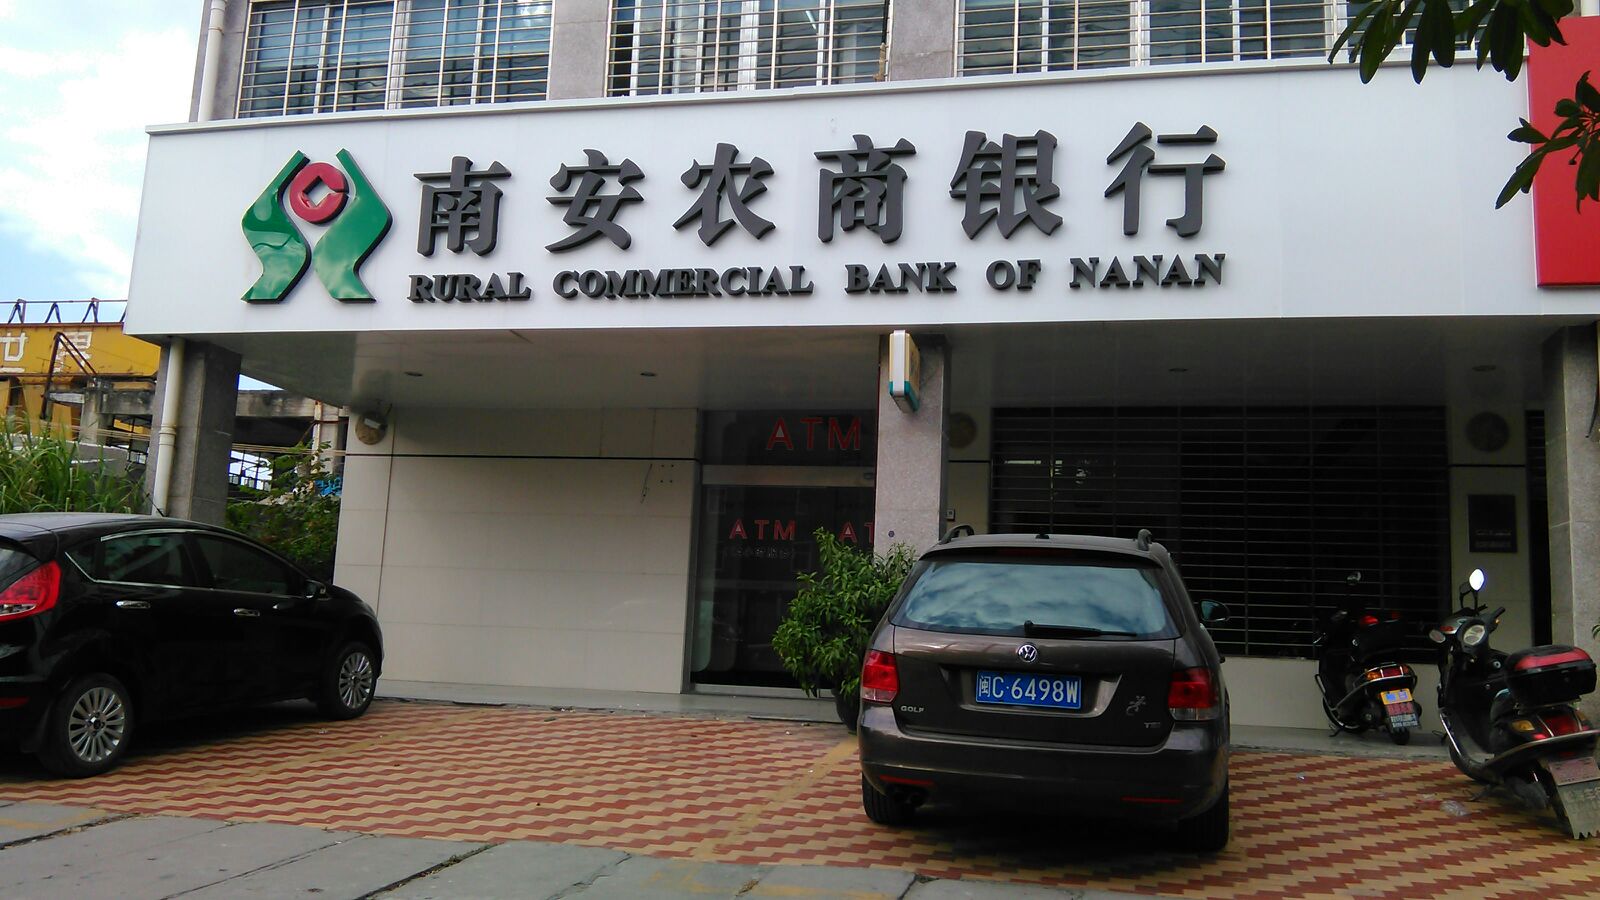 南安农村商业银行24小时自助银行(柳城支行)